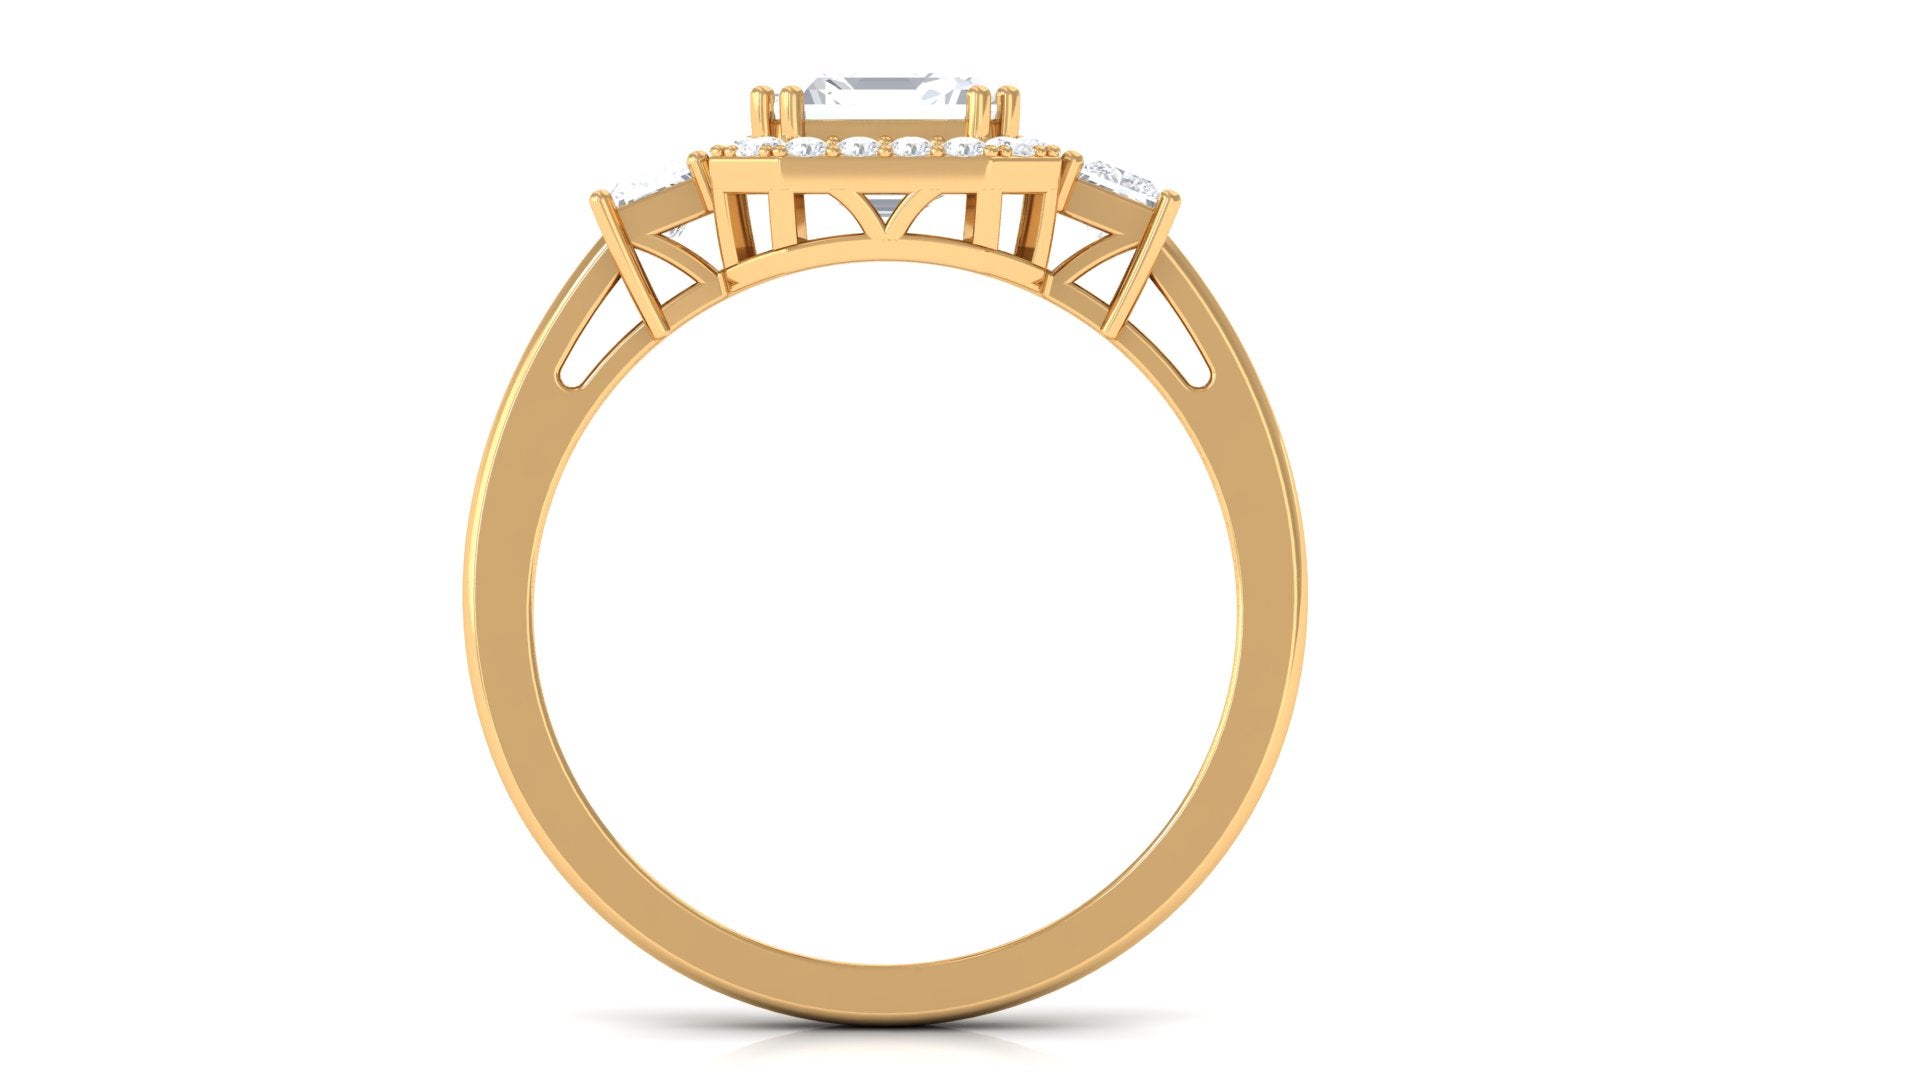 Asscher Cut Zircon Statement Engagement Ring Zircon - ( AAAA ) - Quality - Rosec Jewels